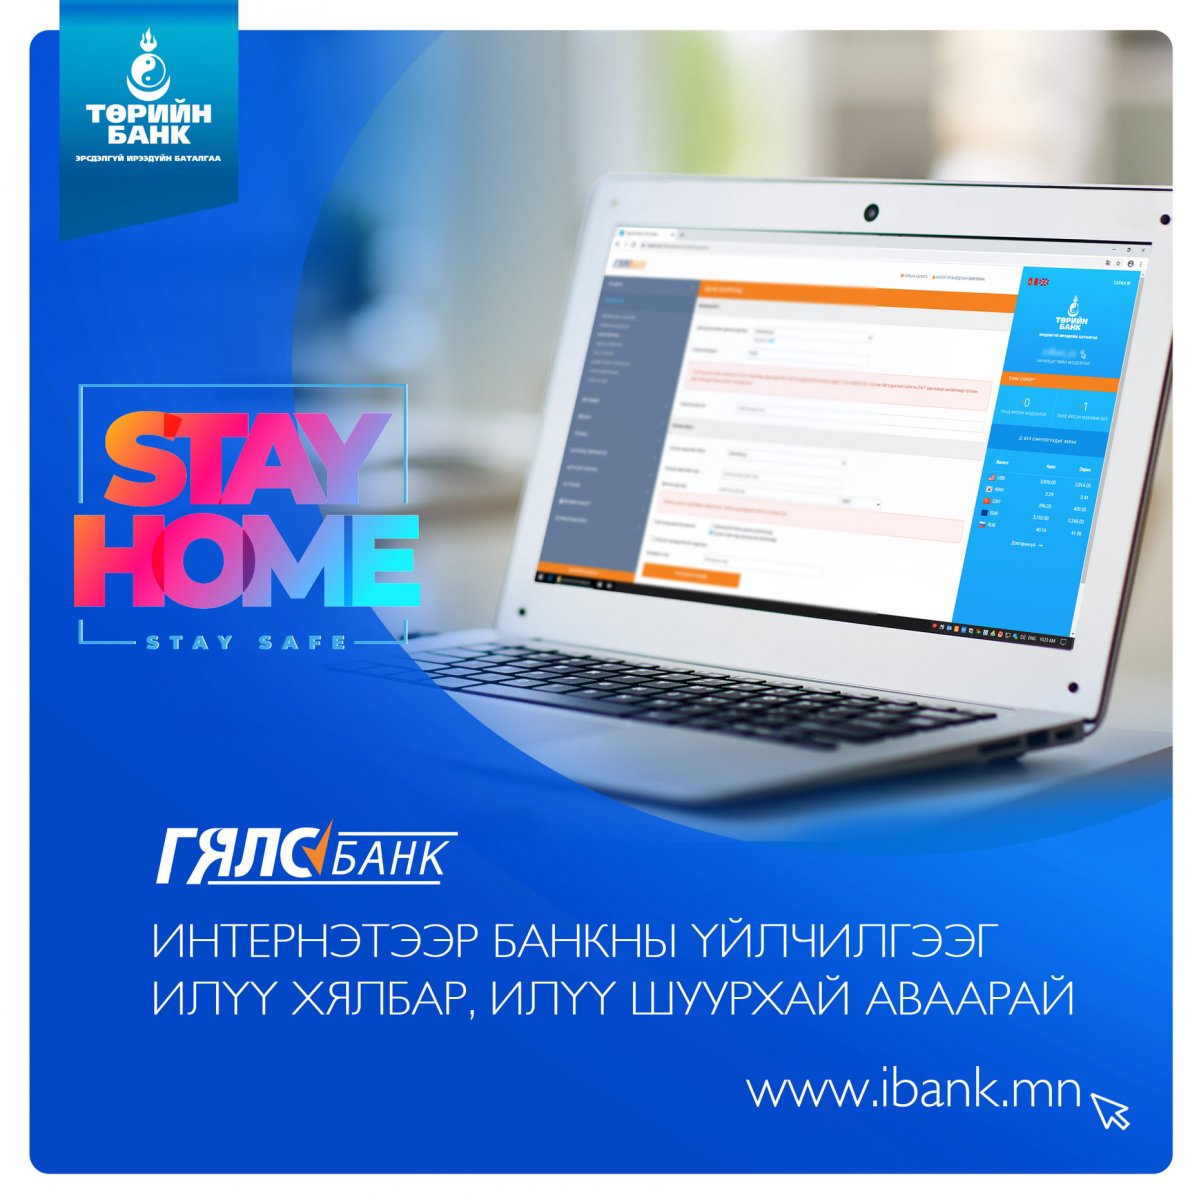 Банкны үйлчилгээг банканд ирэлгүйгээр гэрээсээ цахим сувгуудаа ашиглан онлайнаар аваарай